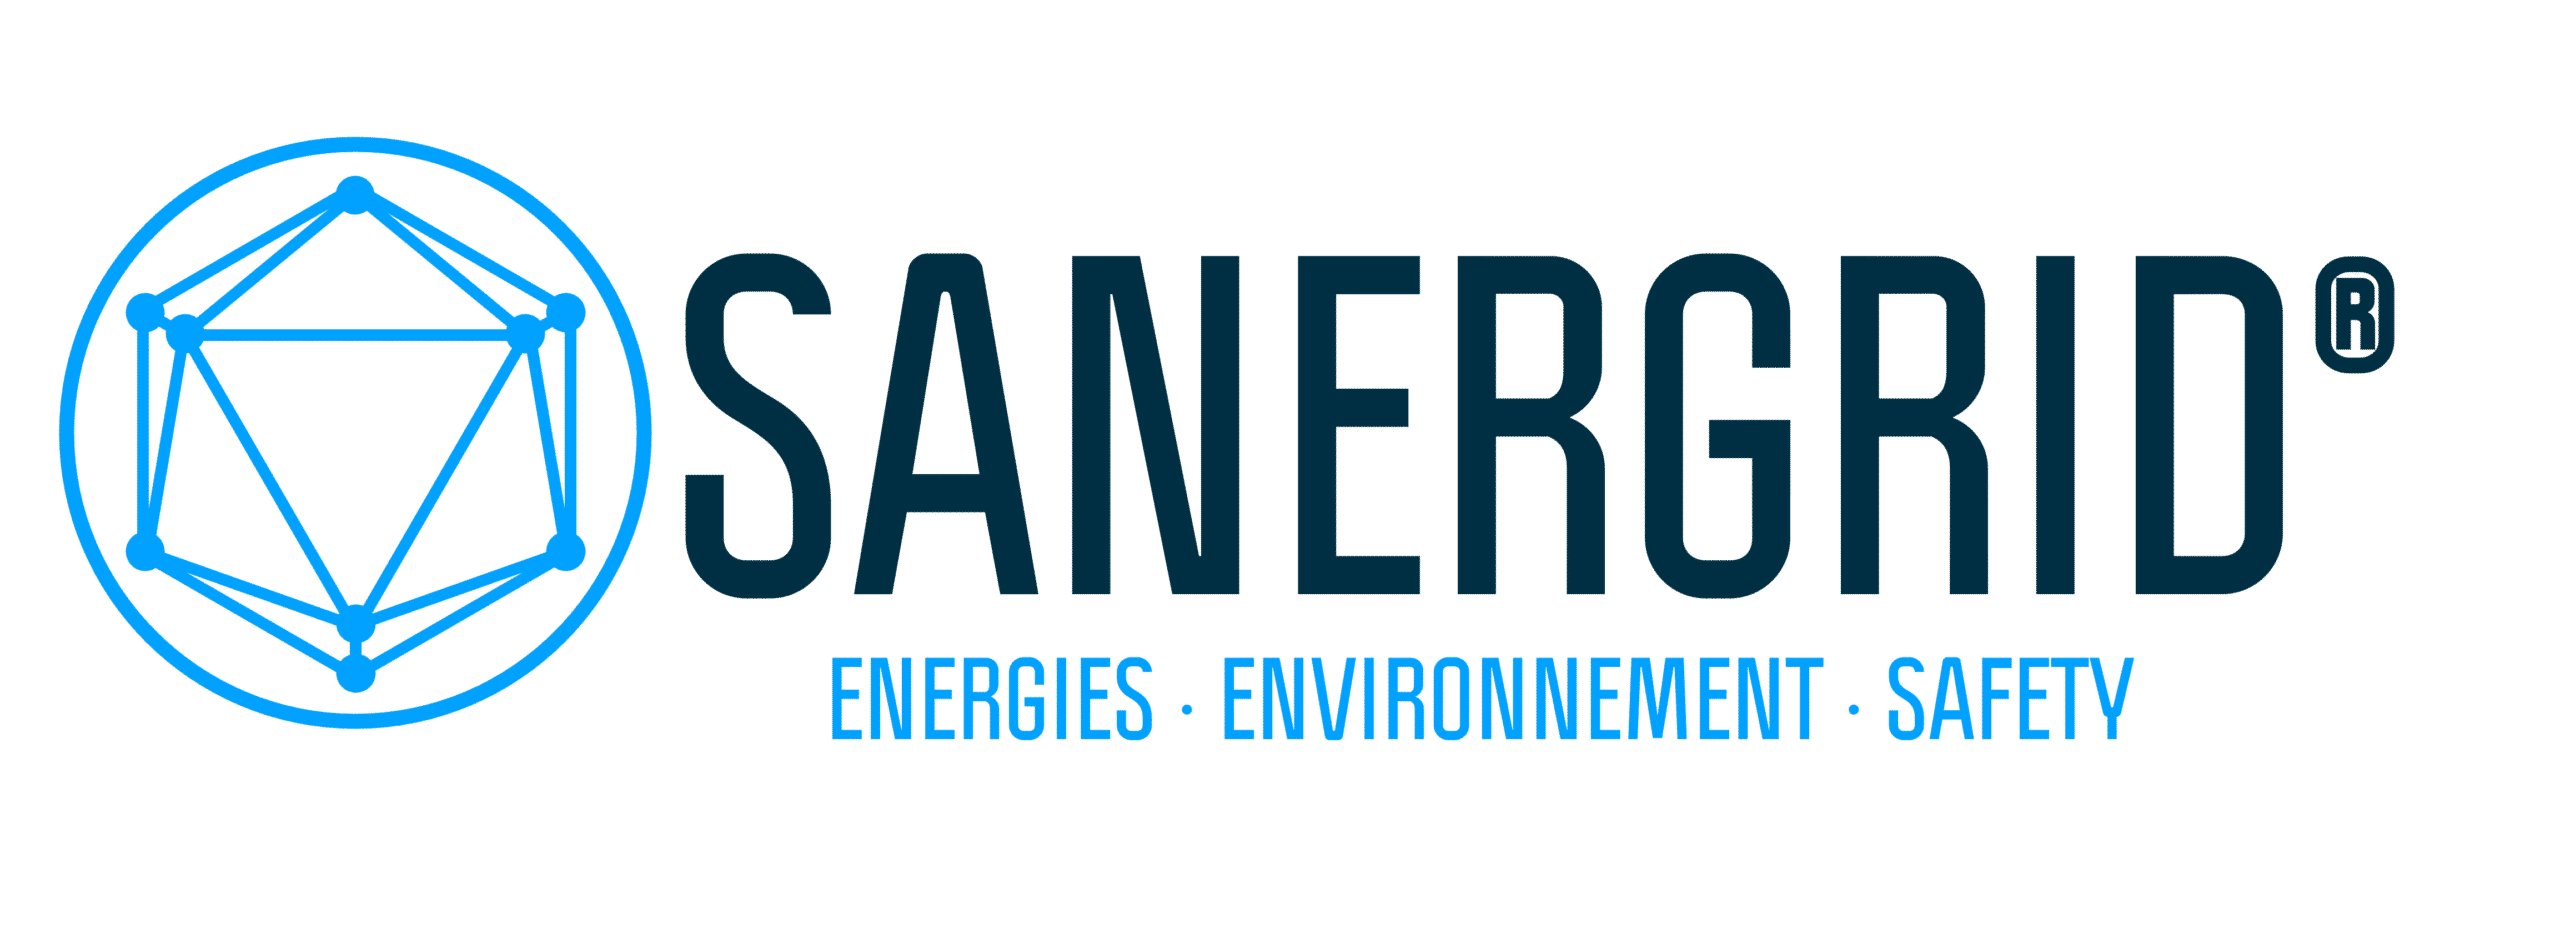 ingegneria SANERGRID e protezione ambientale per i trasformatori elettrici